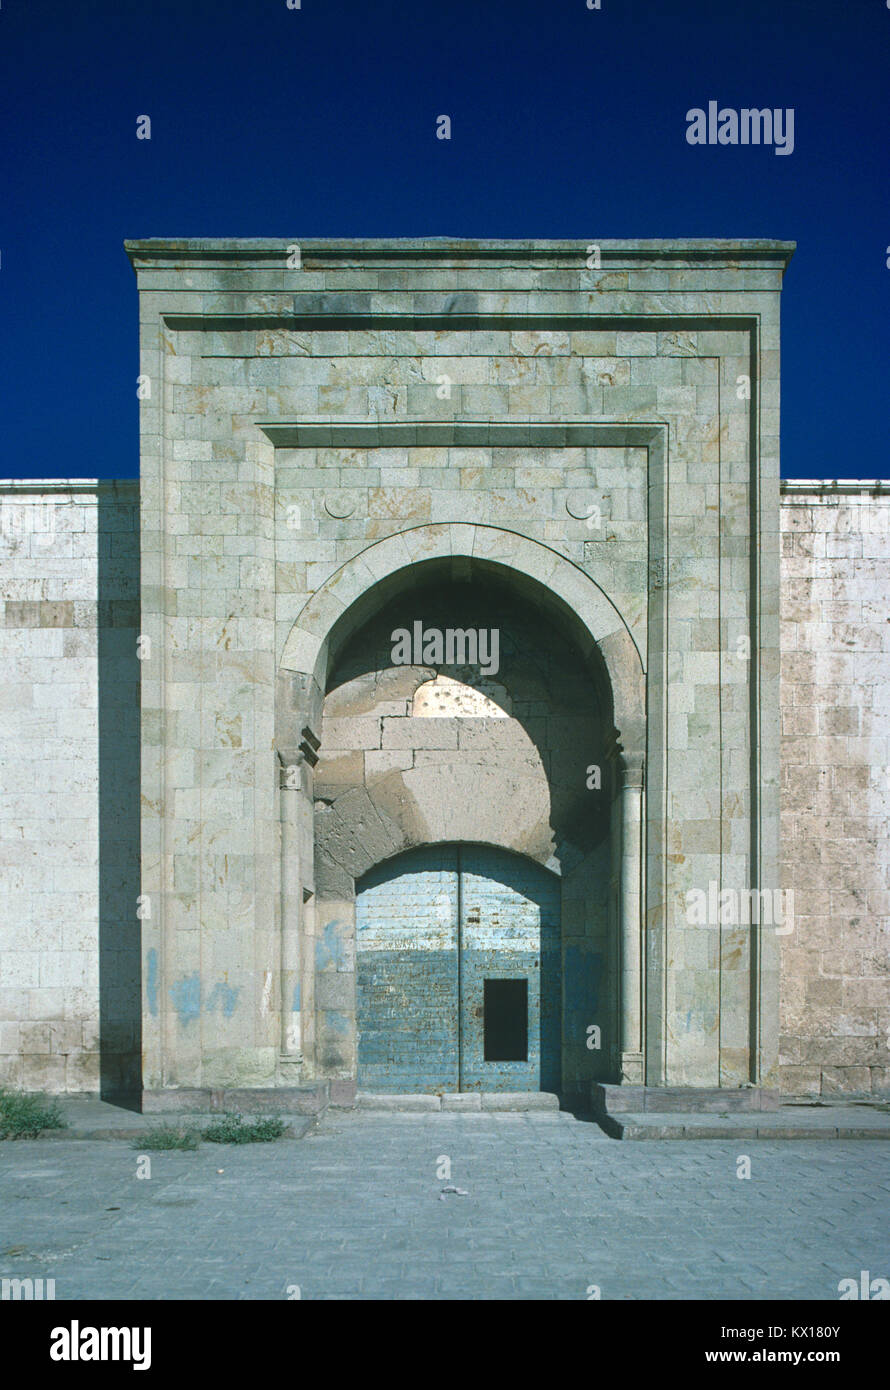 Entrée principale de caravansérails, Horozlu Caeravanserai une ère seldjoukide, construit 1246-1249, près de Konya, Turquie Banque D'Images